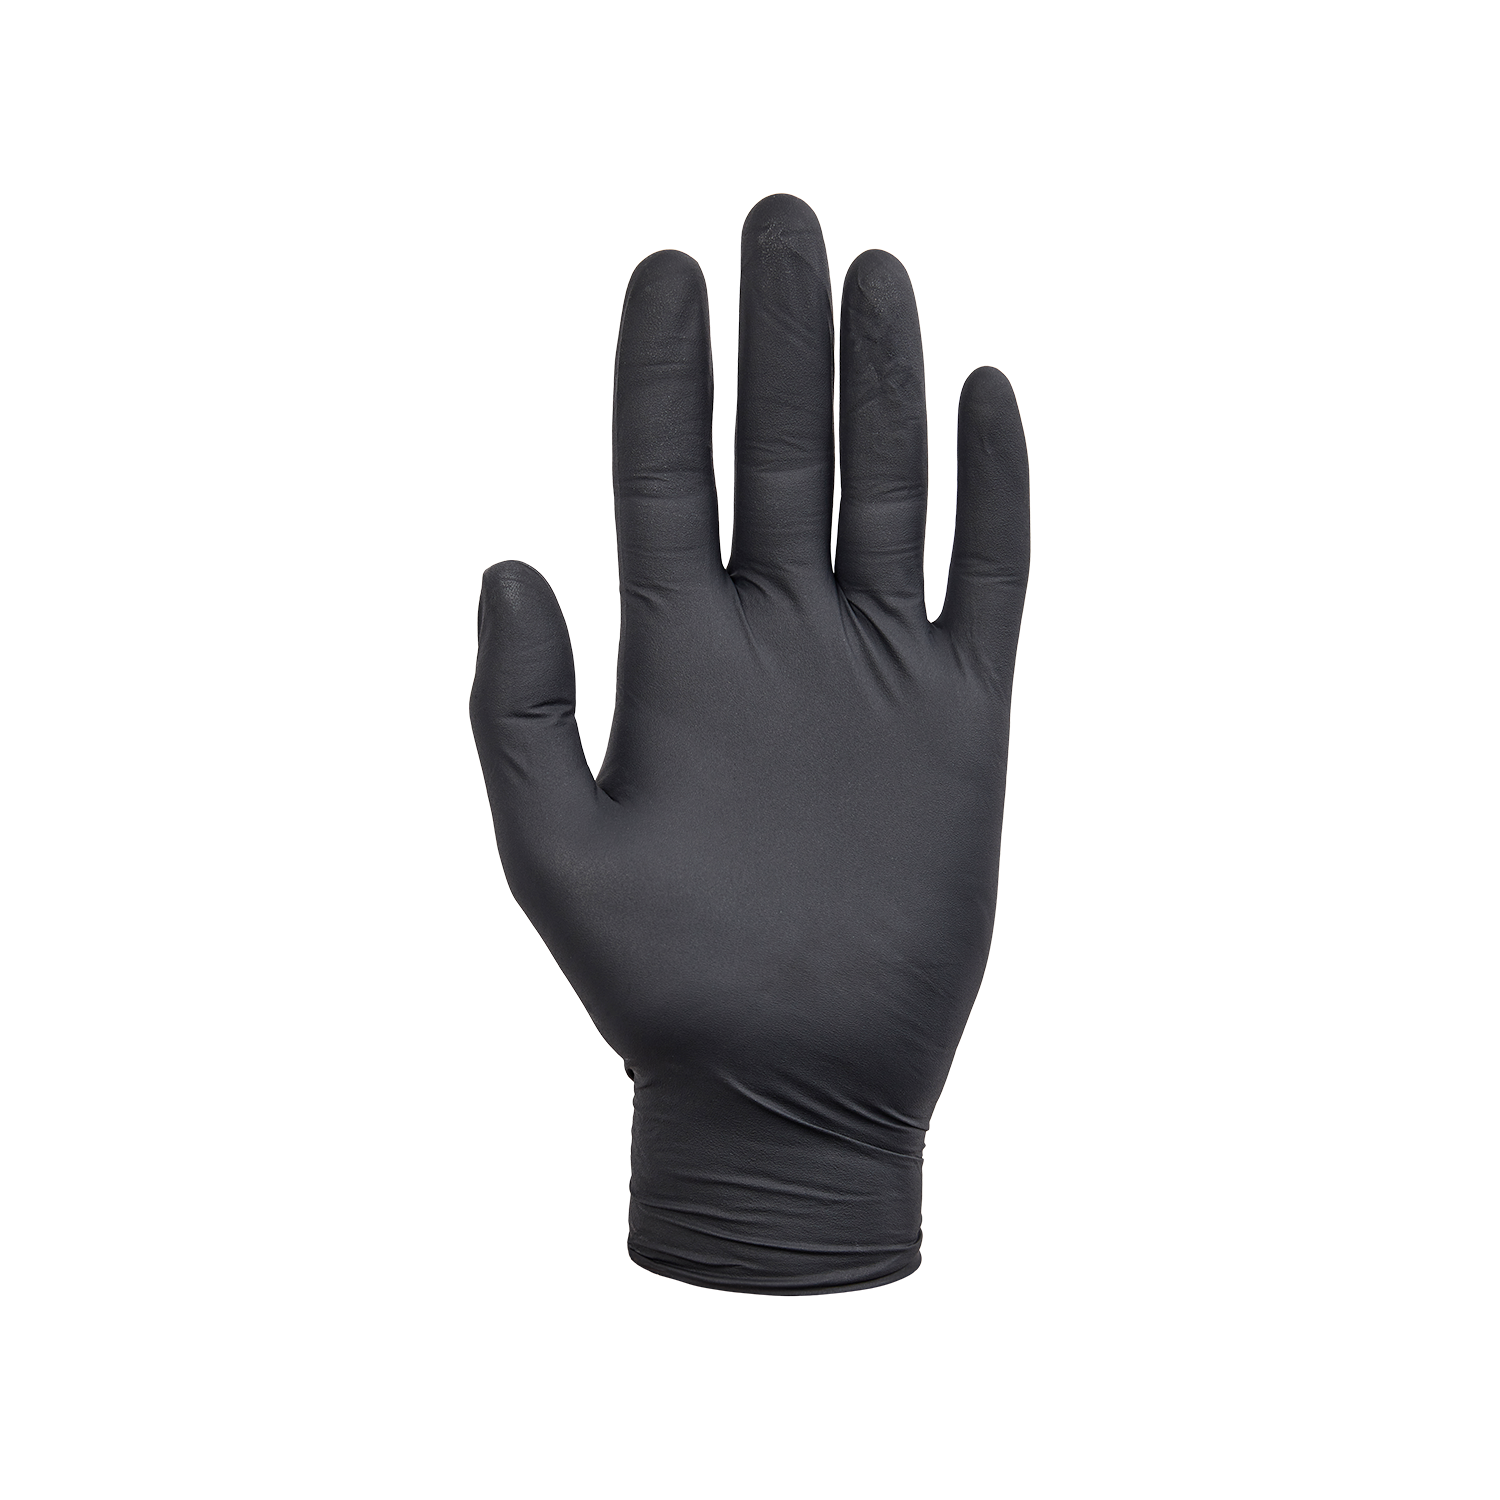 NORSE disposable zwarte nitril handschoenen voor eenmalig gebruik - Maat 9/L